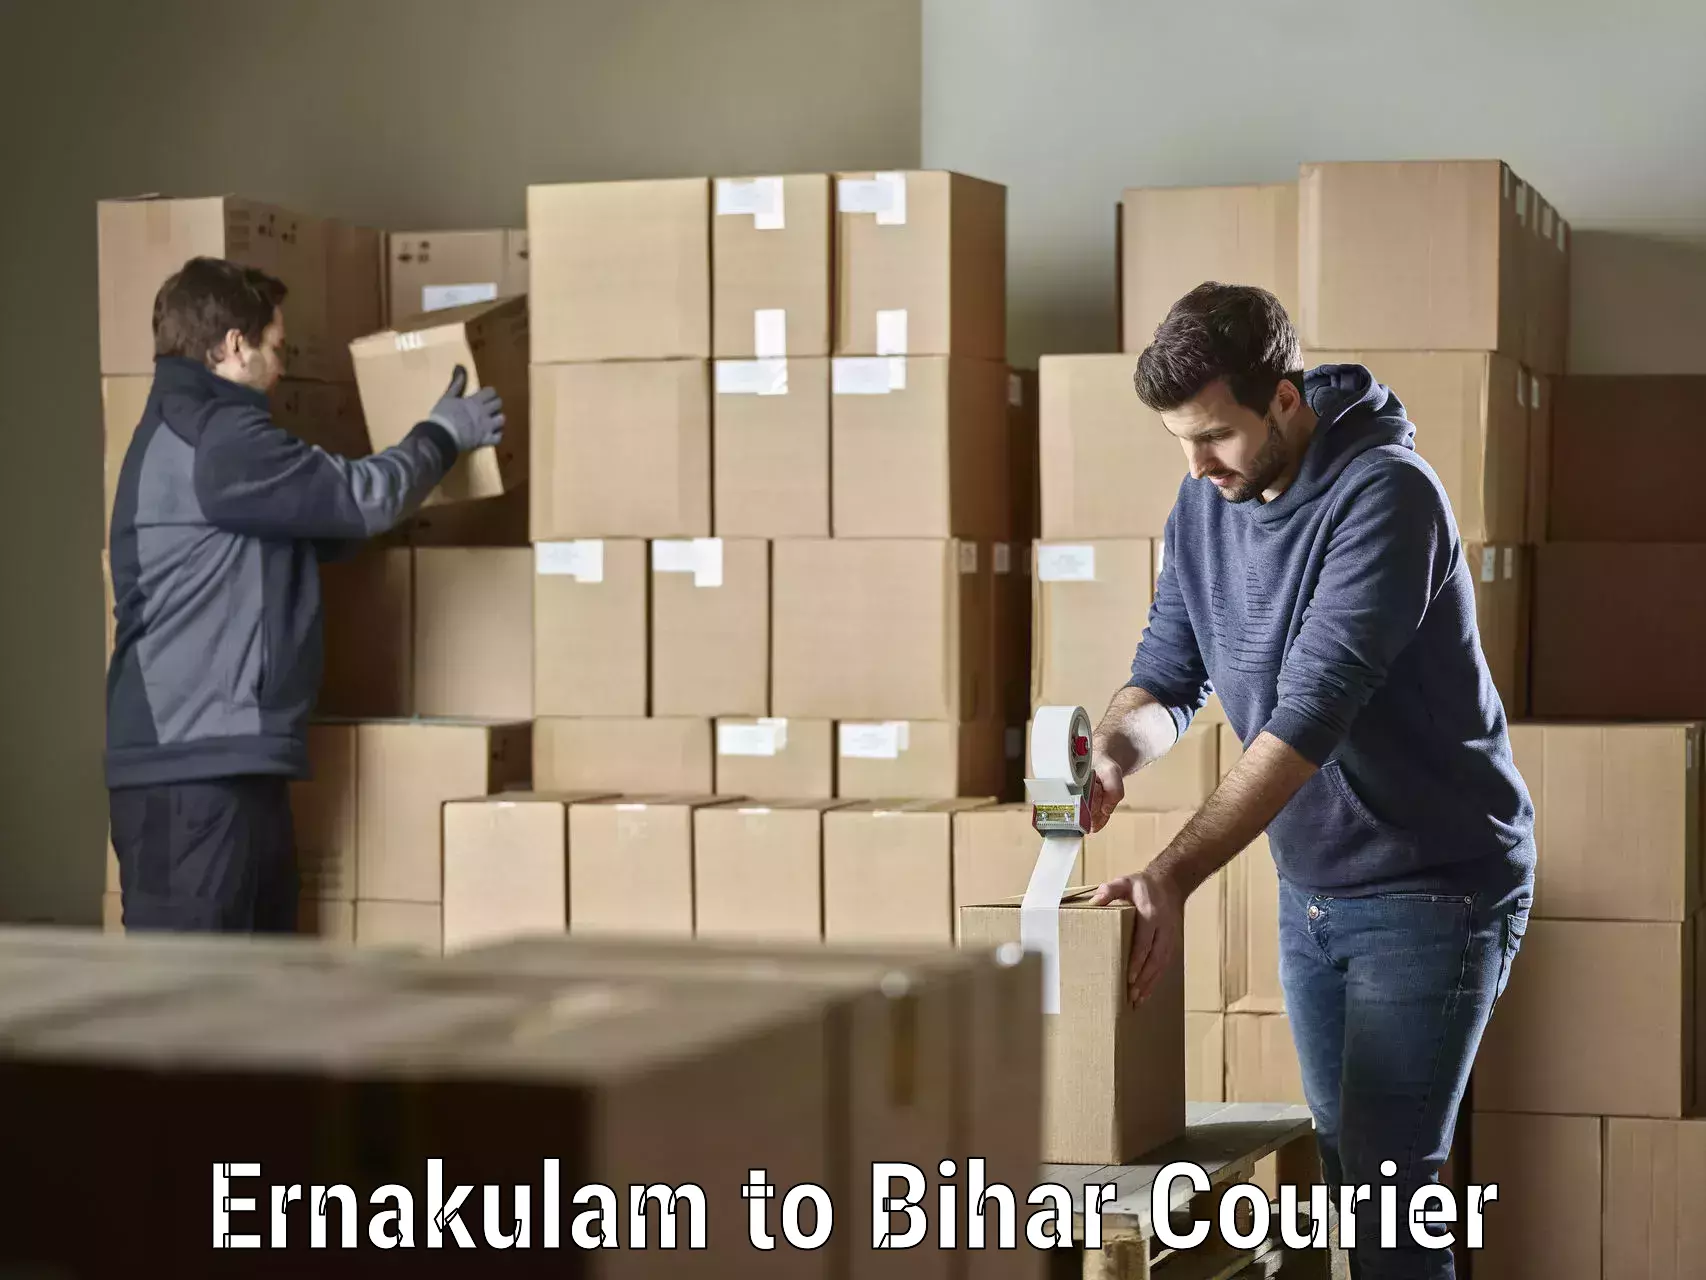 Ocean freight courier Ernakulam to Bankipore